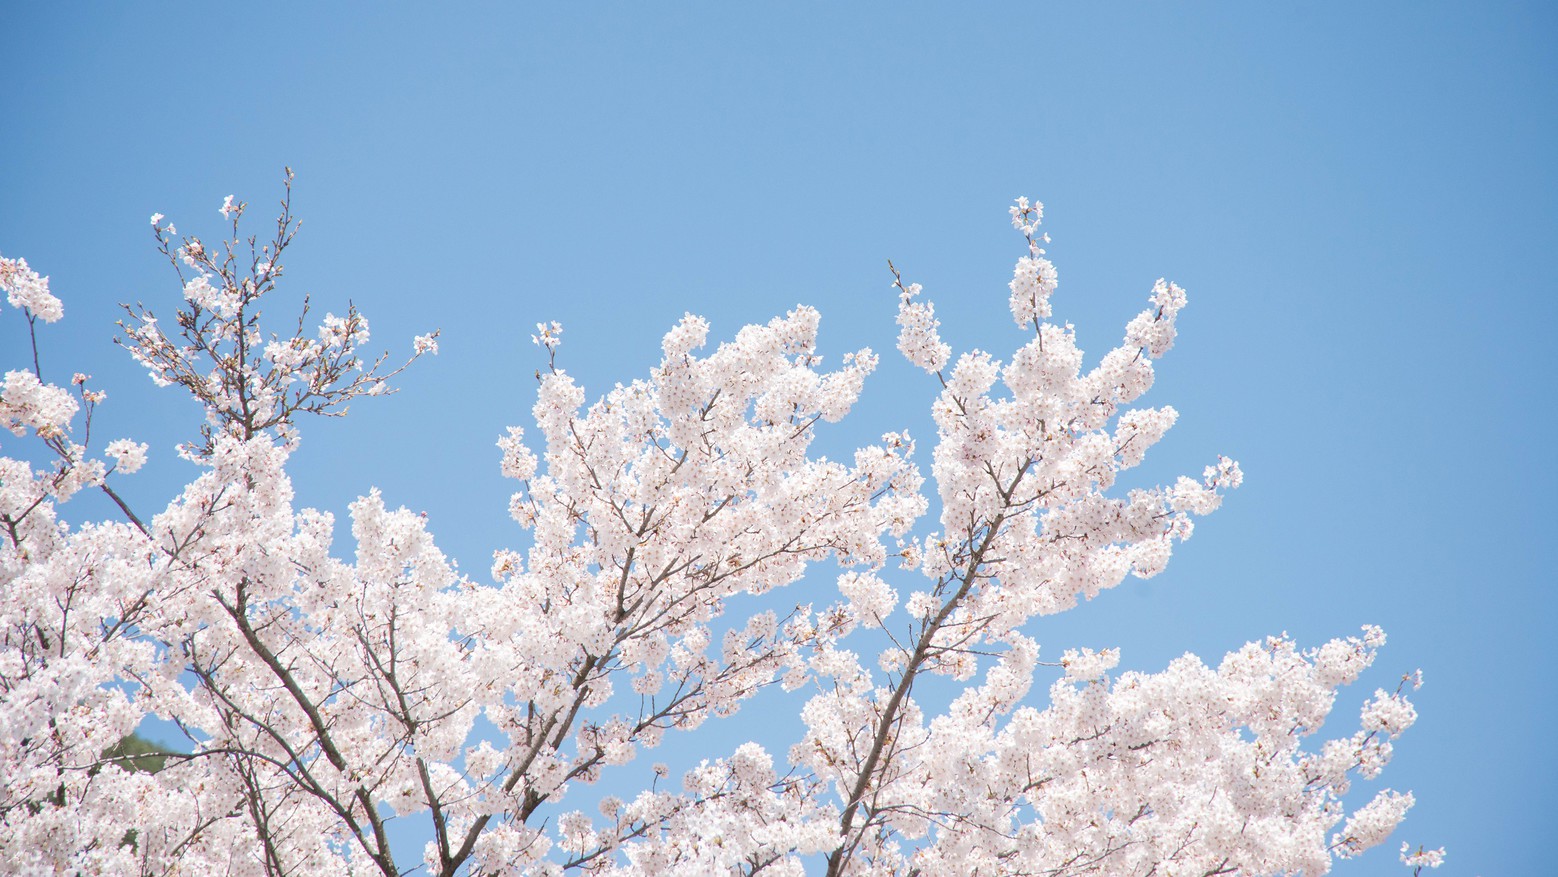 *桜/青空と桜のコントラストは、ただただ美しい、の一言